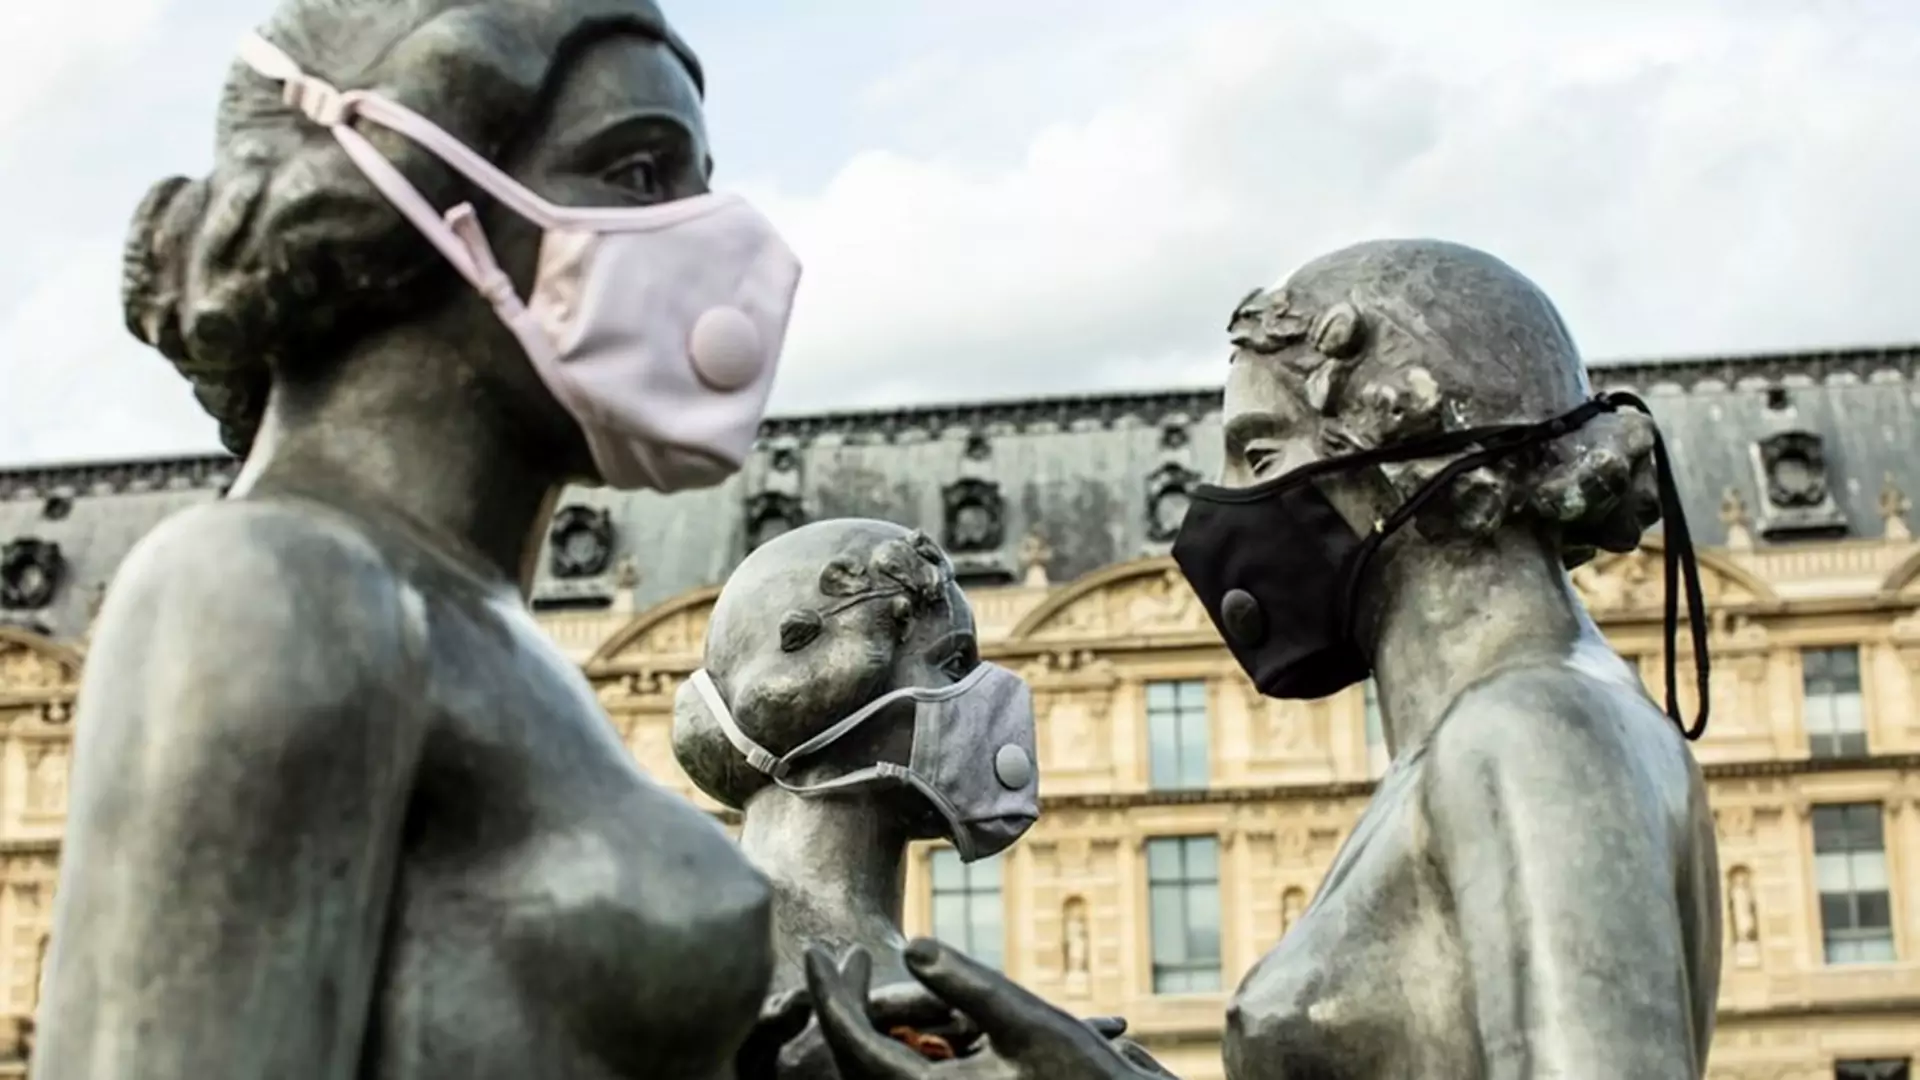 Rzeźby na ulicach Paryża ubrane w antysmogowe maski. "Smog przyczyną śmierci 7 mln osób rocznie"